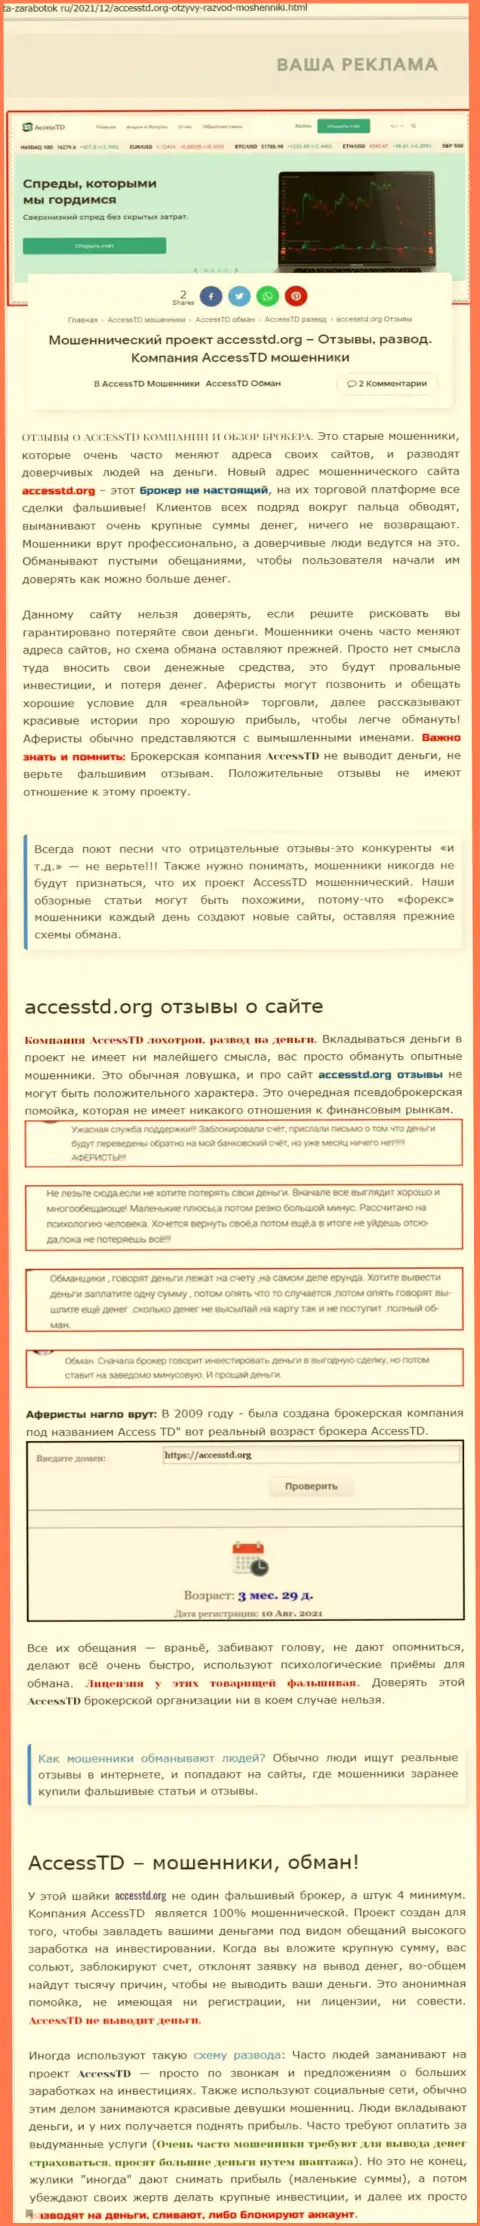 АссессТД Орг - это МОШЕННИКИ !!! Обзор организации и отзывы пострадавших